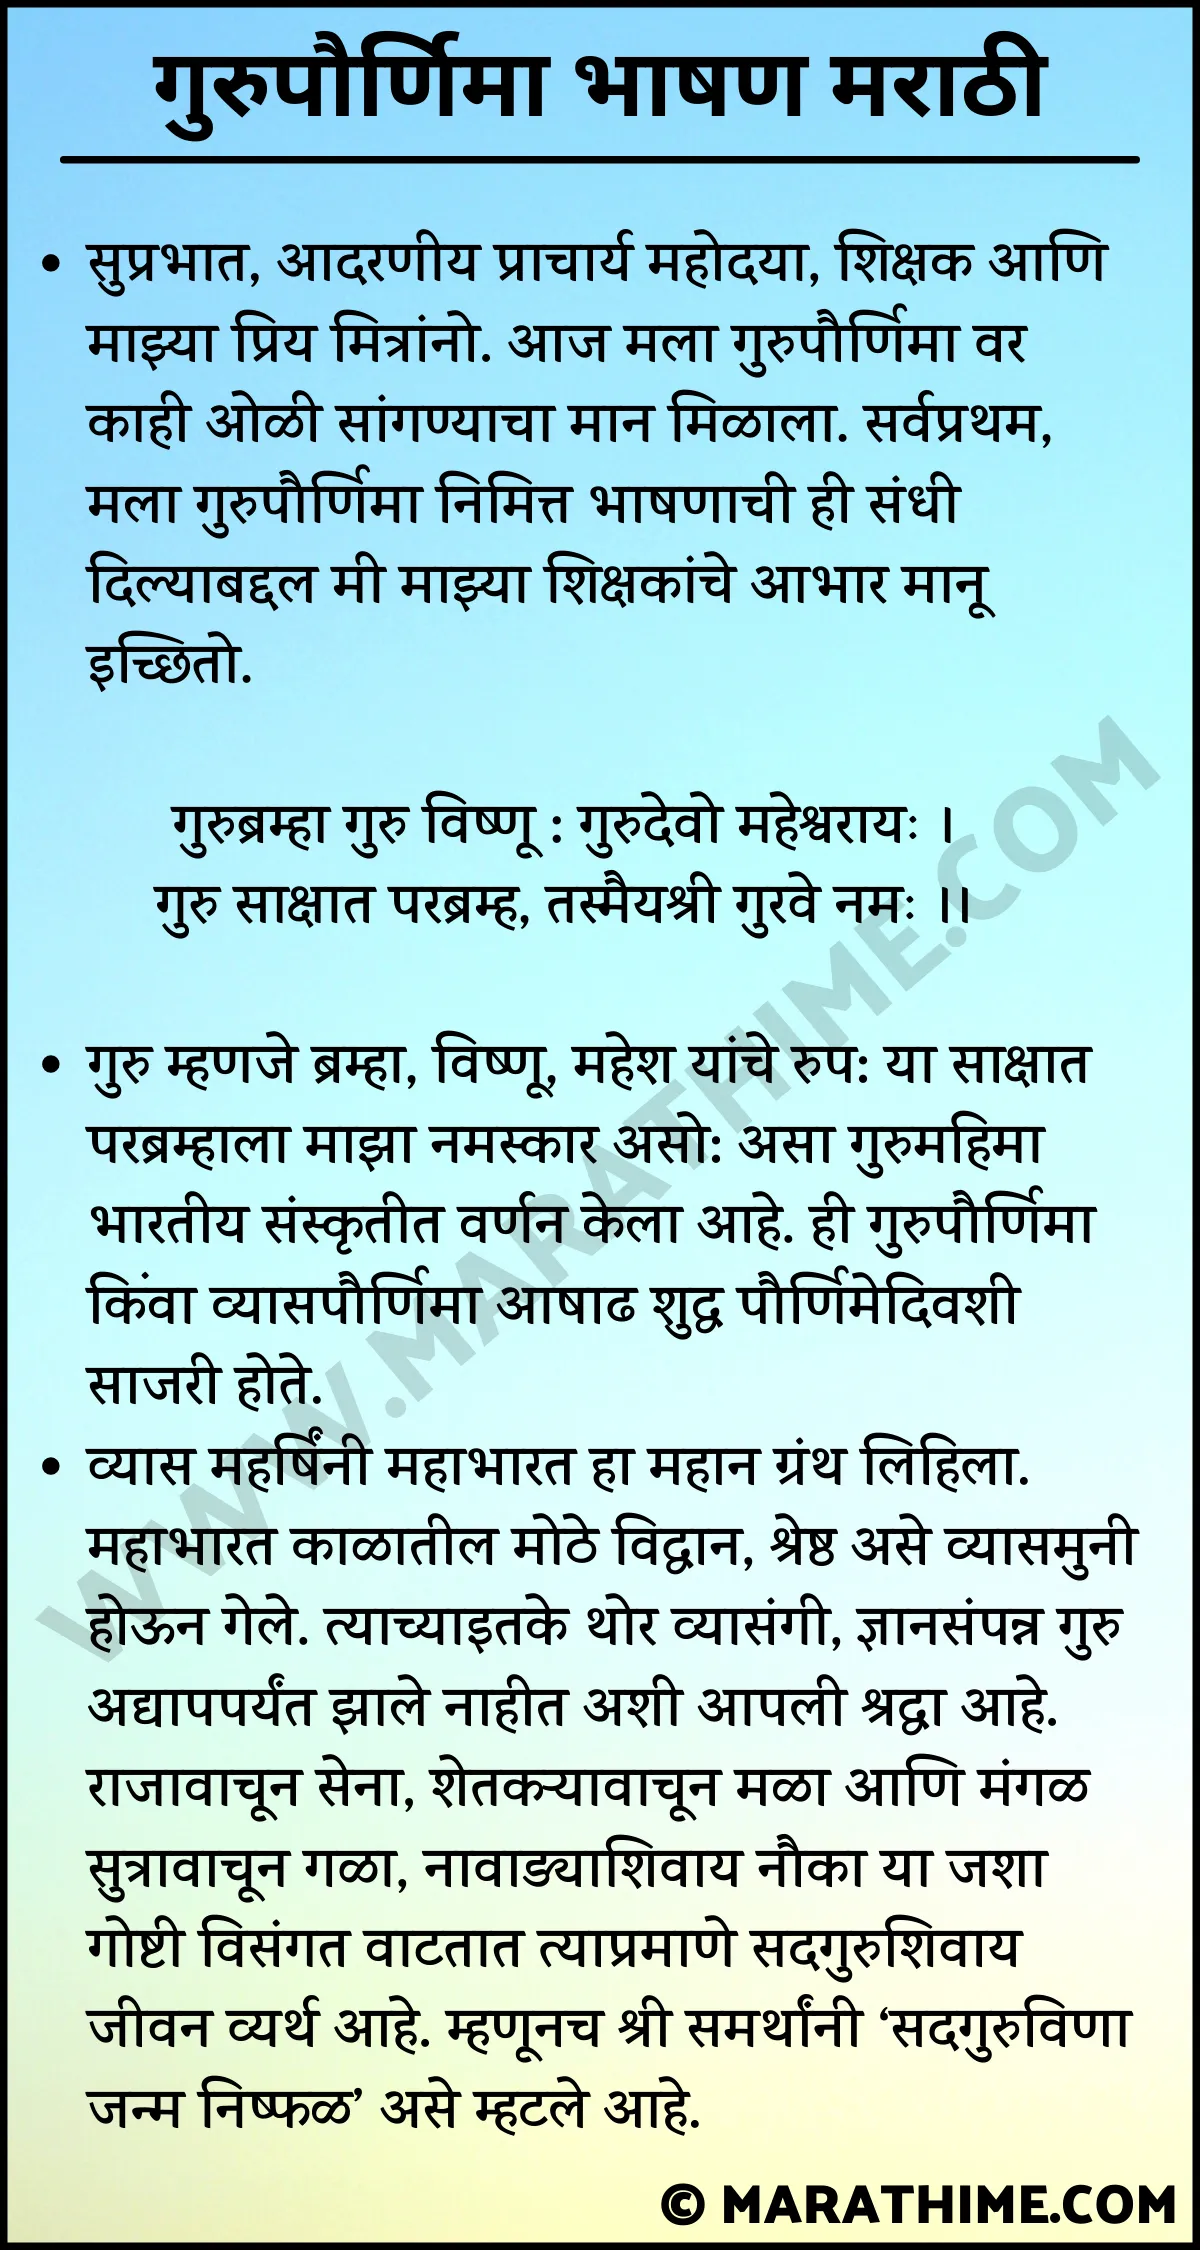 गुरुपौर्णिमा भाषण मराठी–Guru Purnima Speech in Marathi